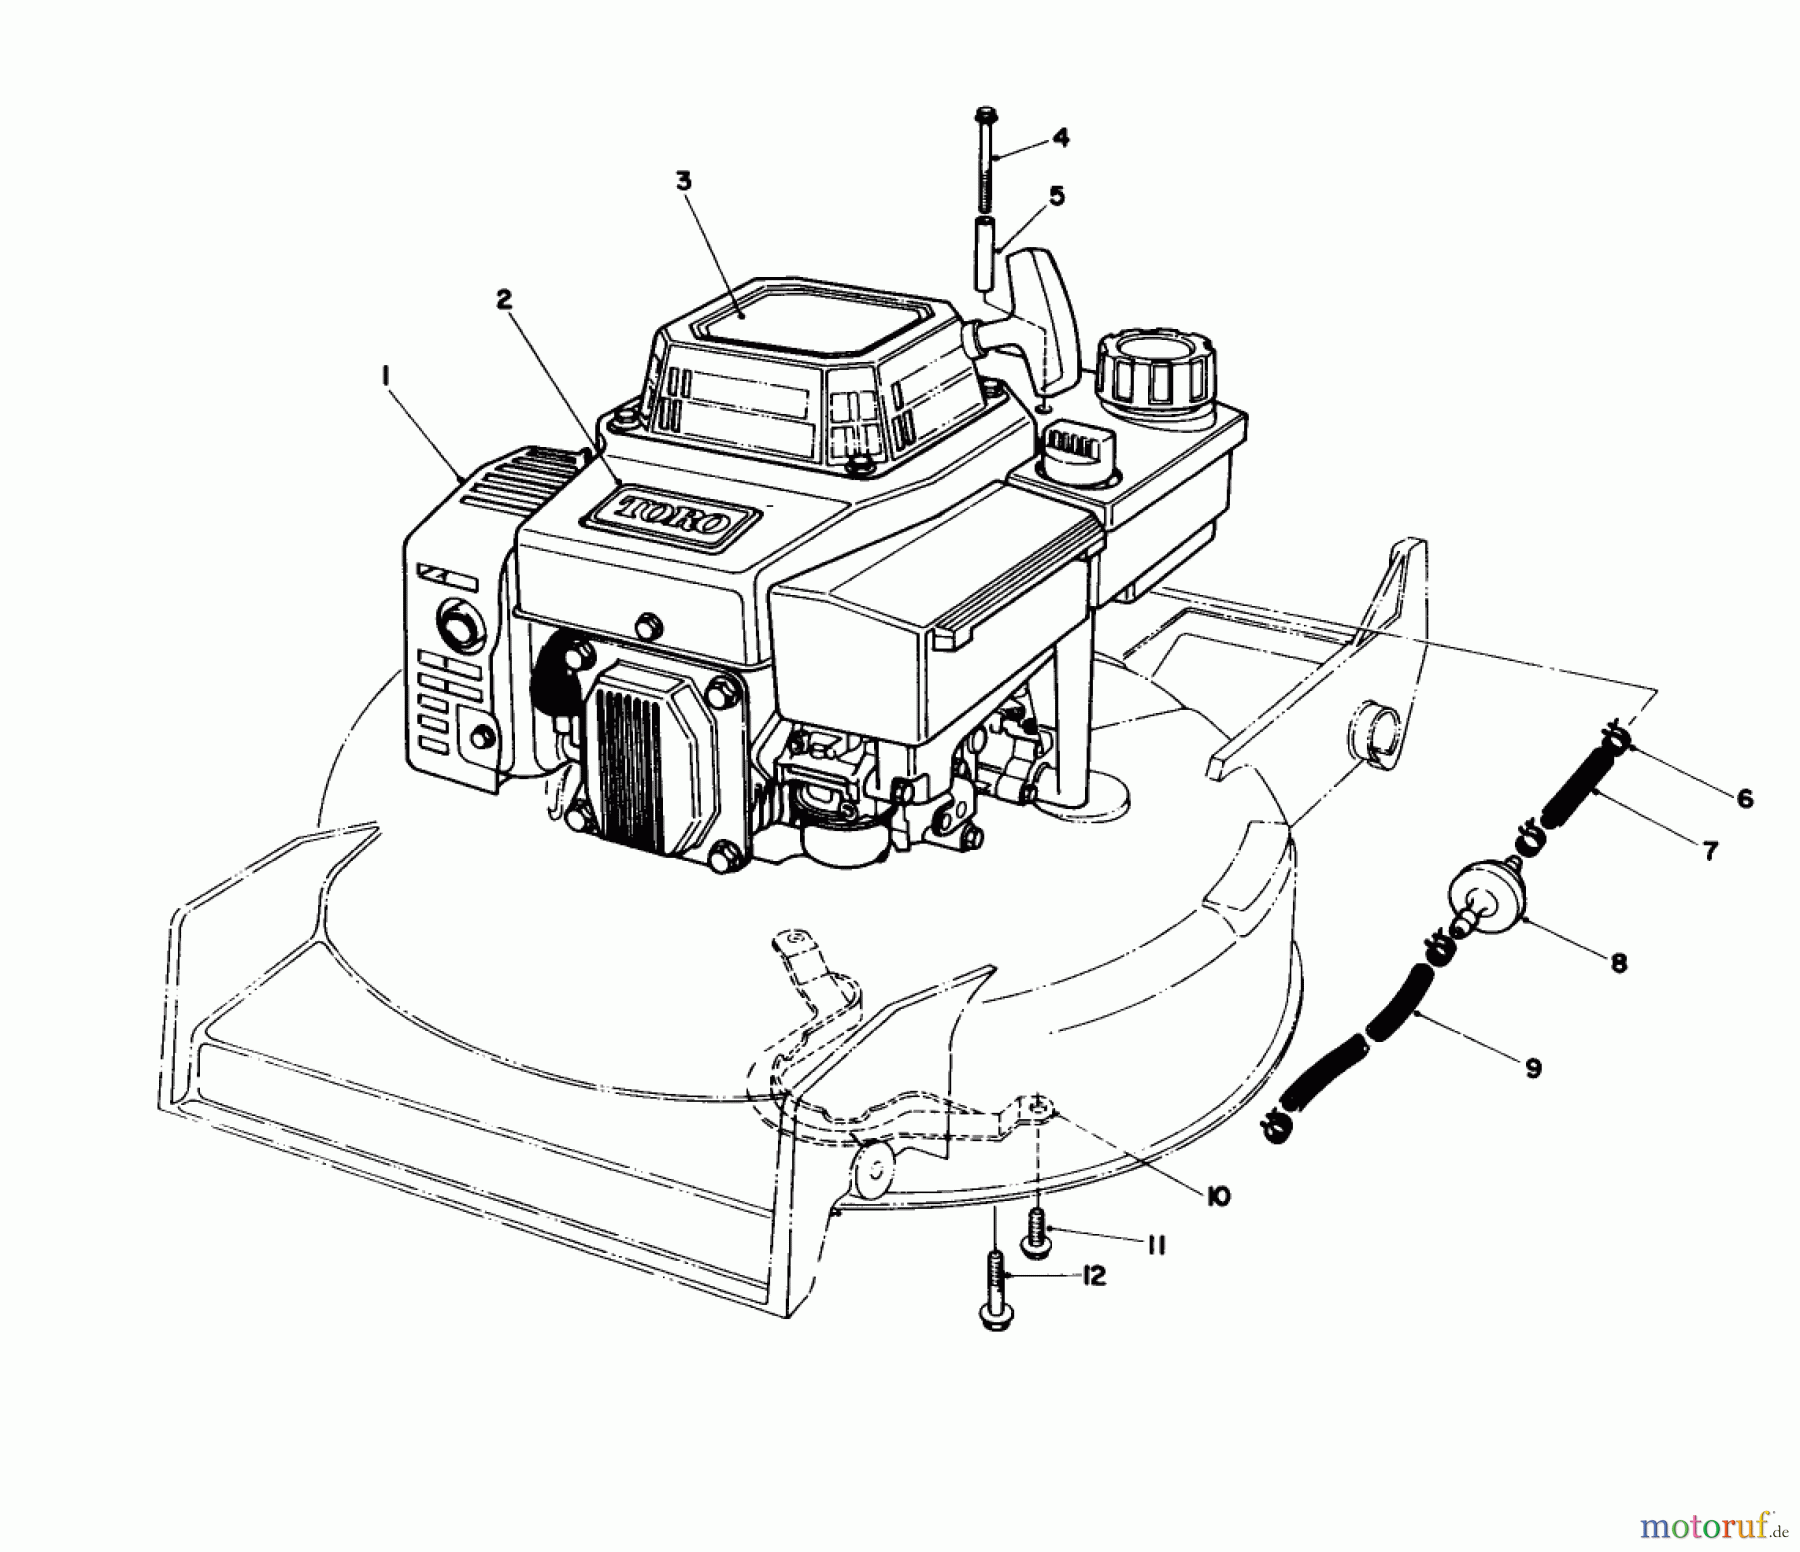  Toro Neu Mowers, Walk-Behind Seite 1 20622C - Toro Lawnmower, 1989 (9000001-9999999) ENGINE ASSEMBLY